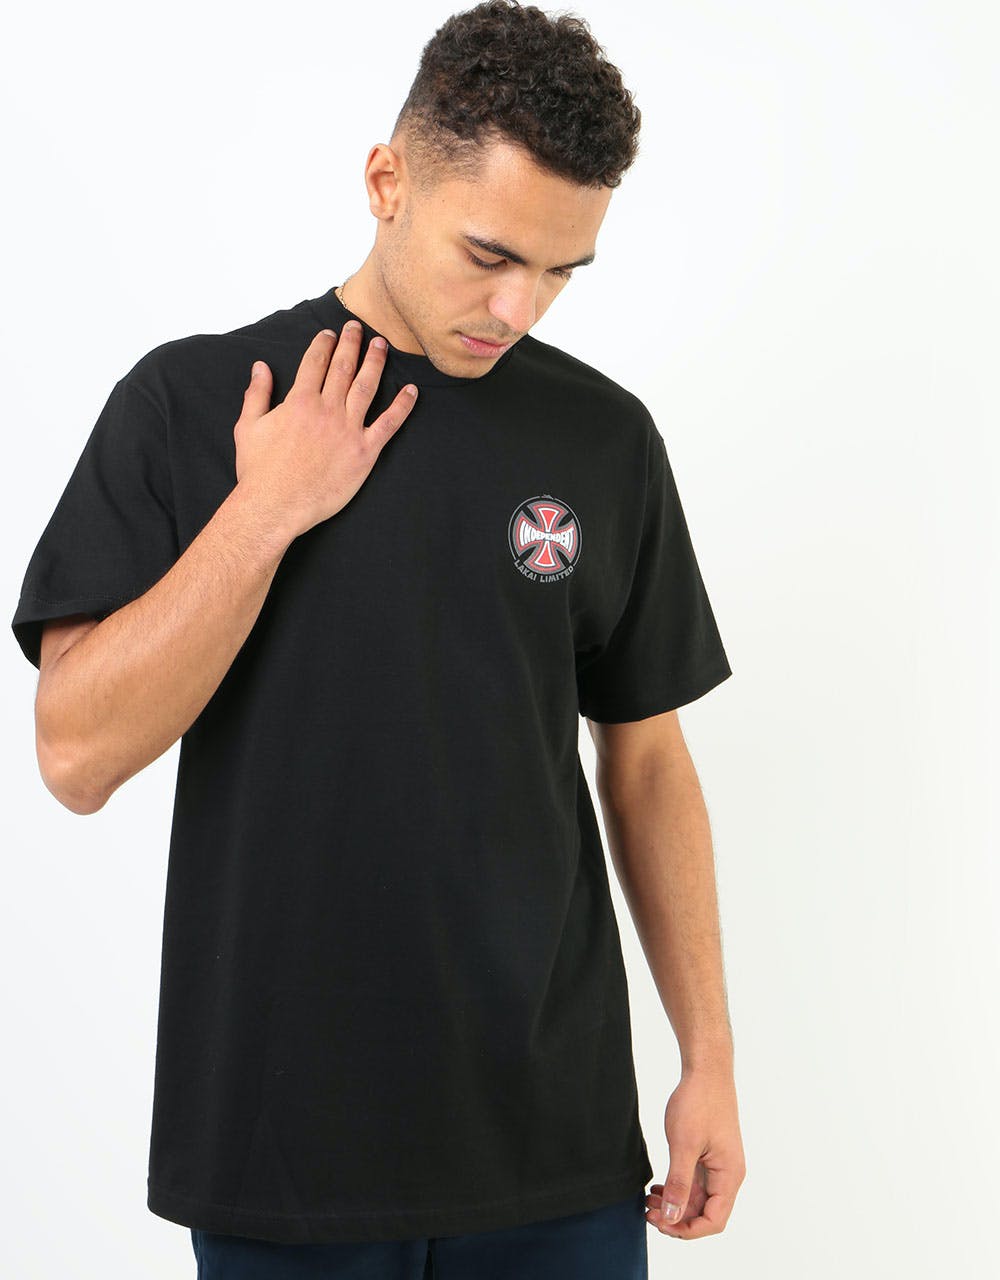 Lakai x Independent T-Shirt - Black